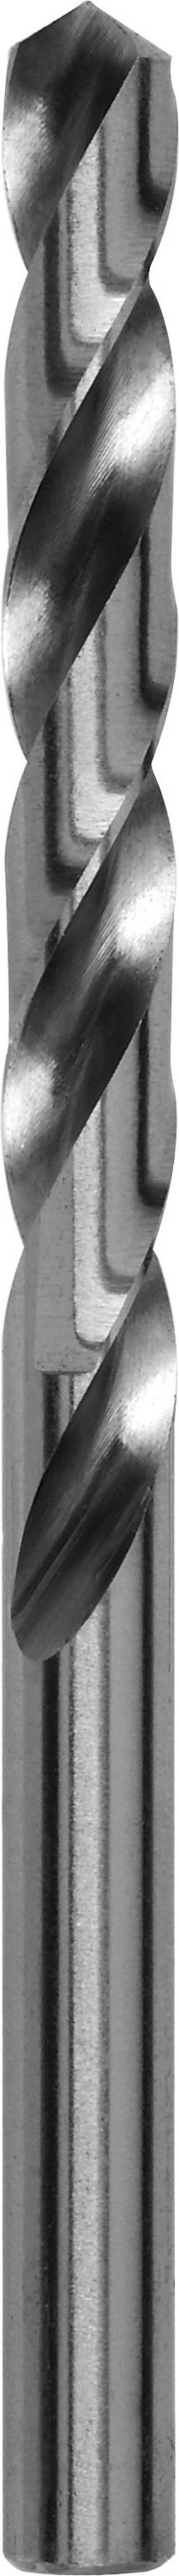 Kovový spirálový vrták Bosch Accessories 2609255045, 5 mm, 86 mm, HSS, 1 ks